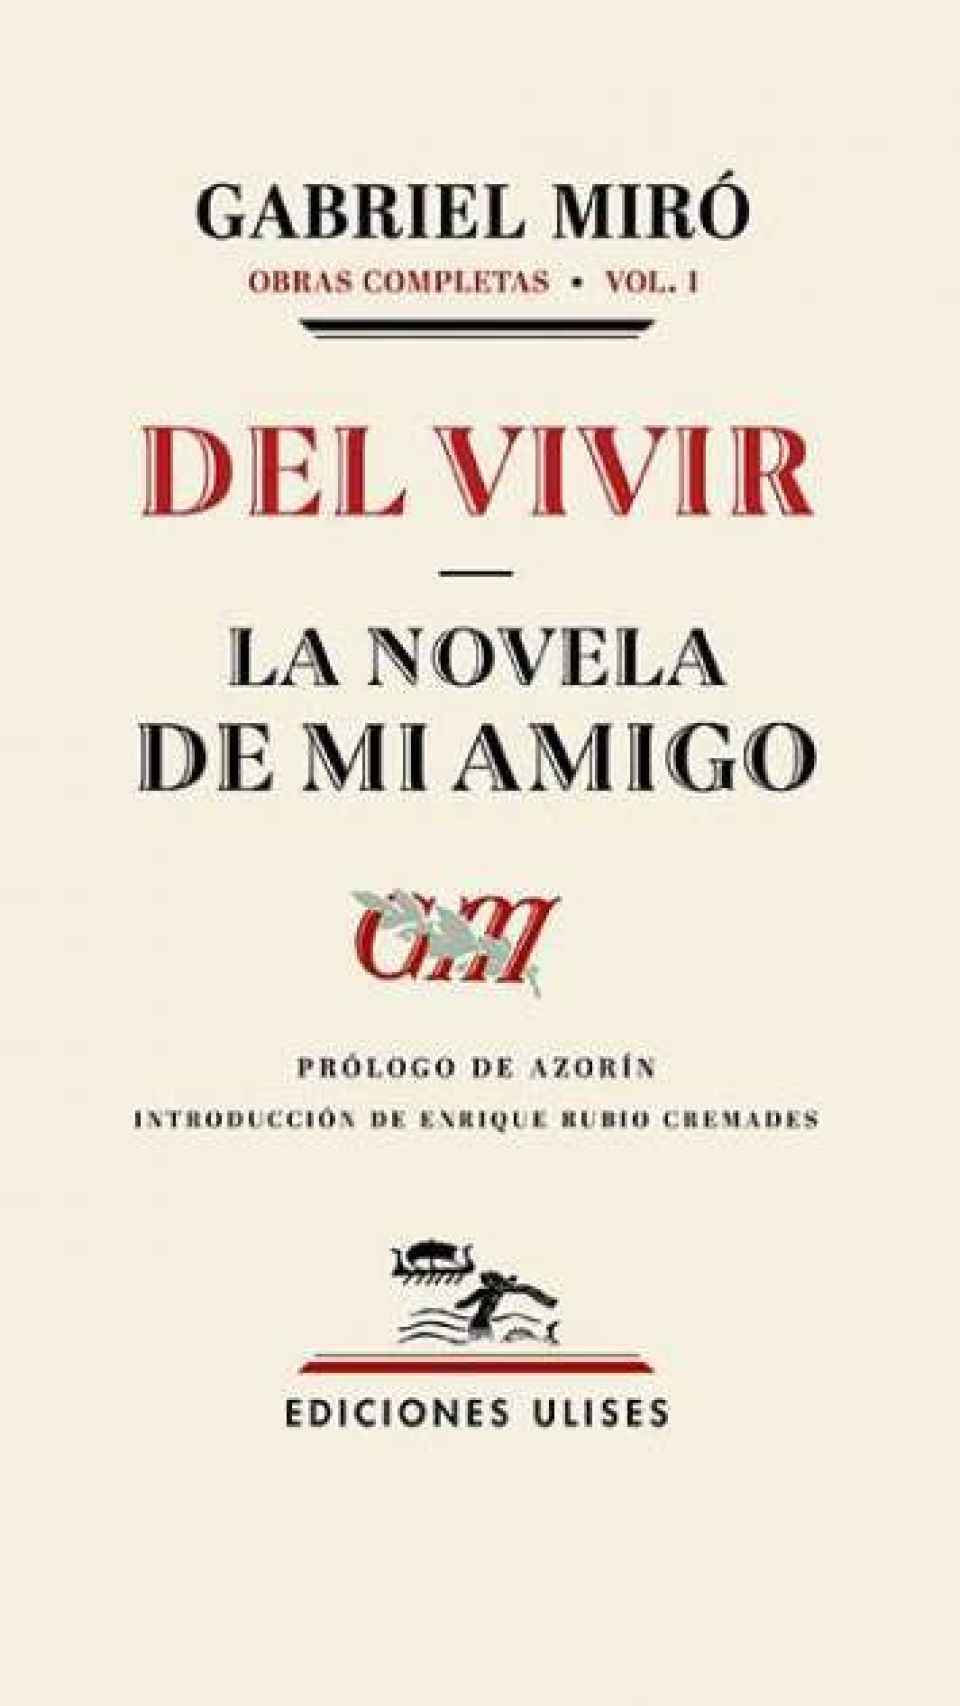 Volumen 1 de la obras completas de Gabriel Miró